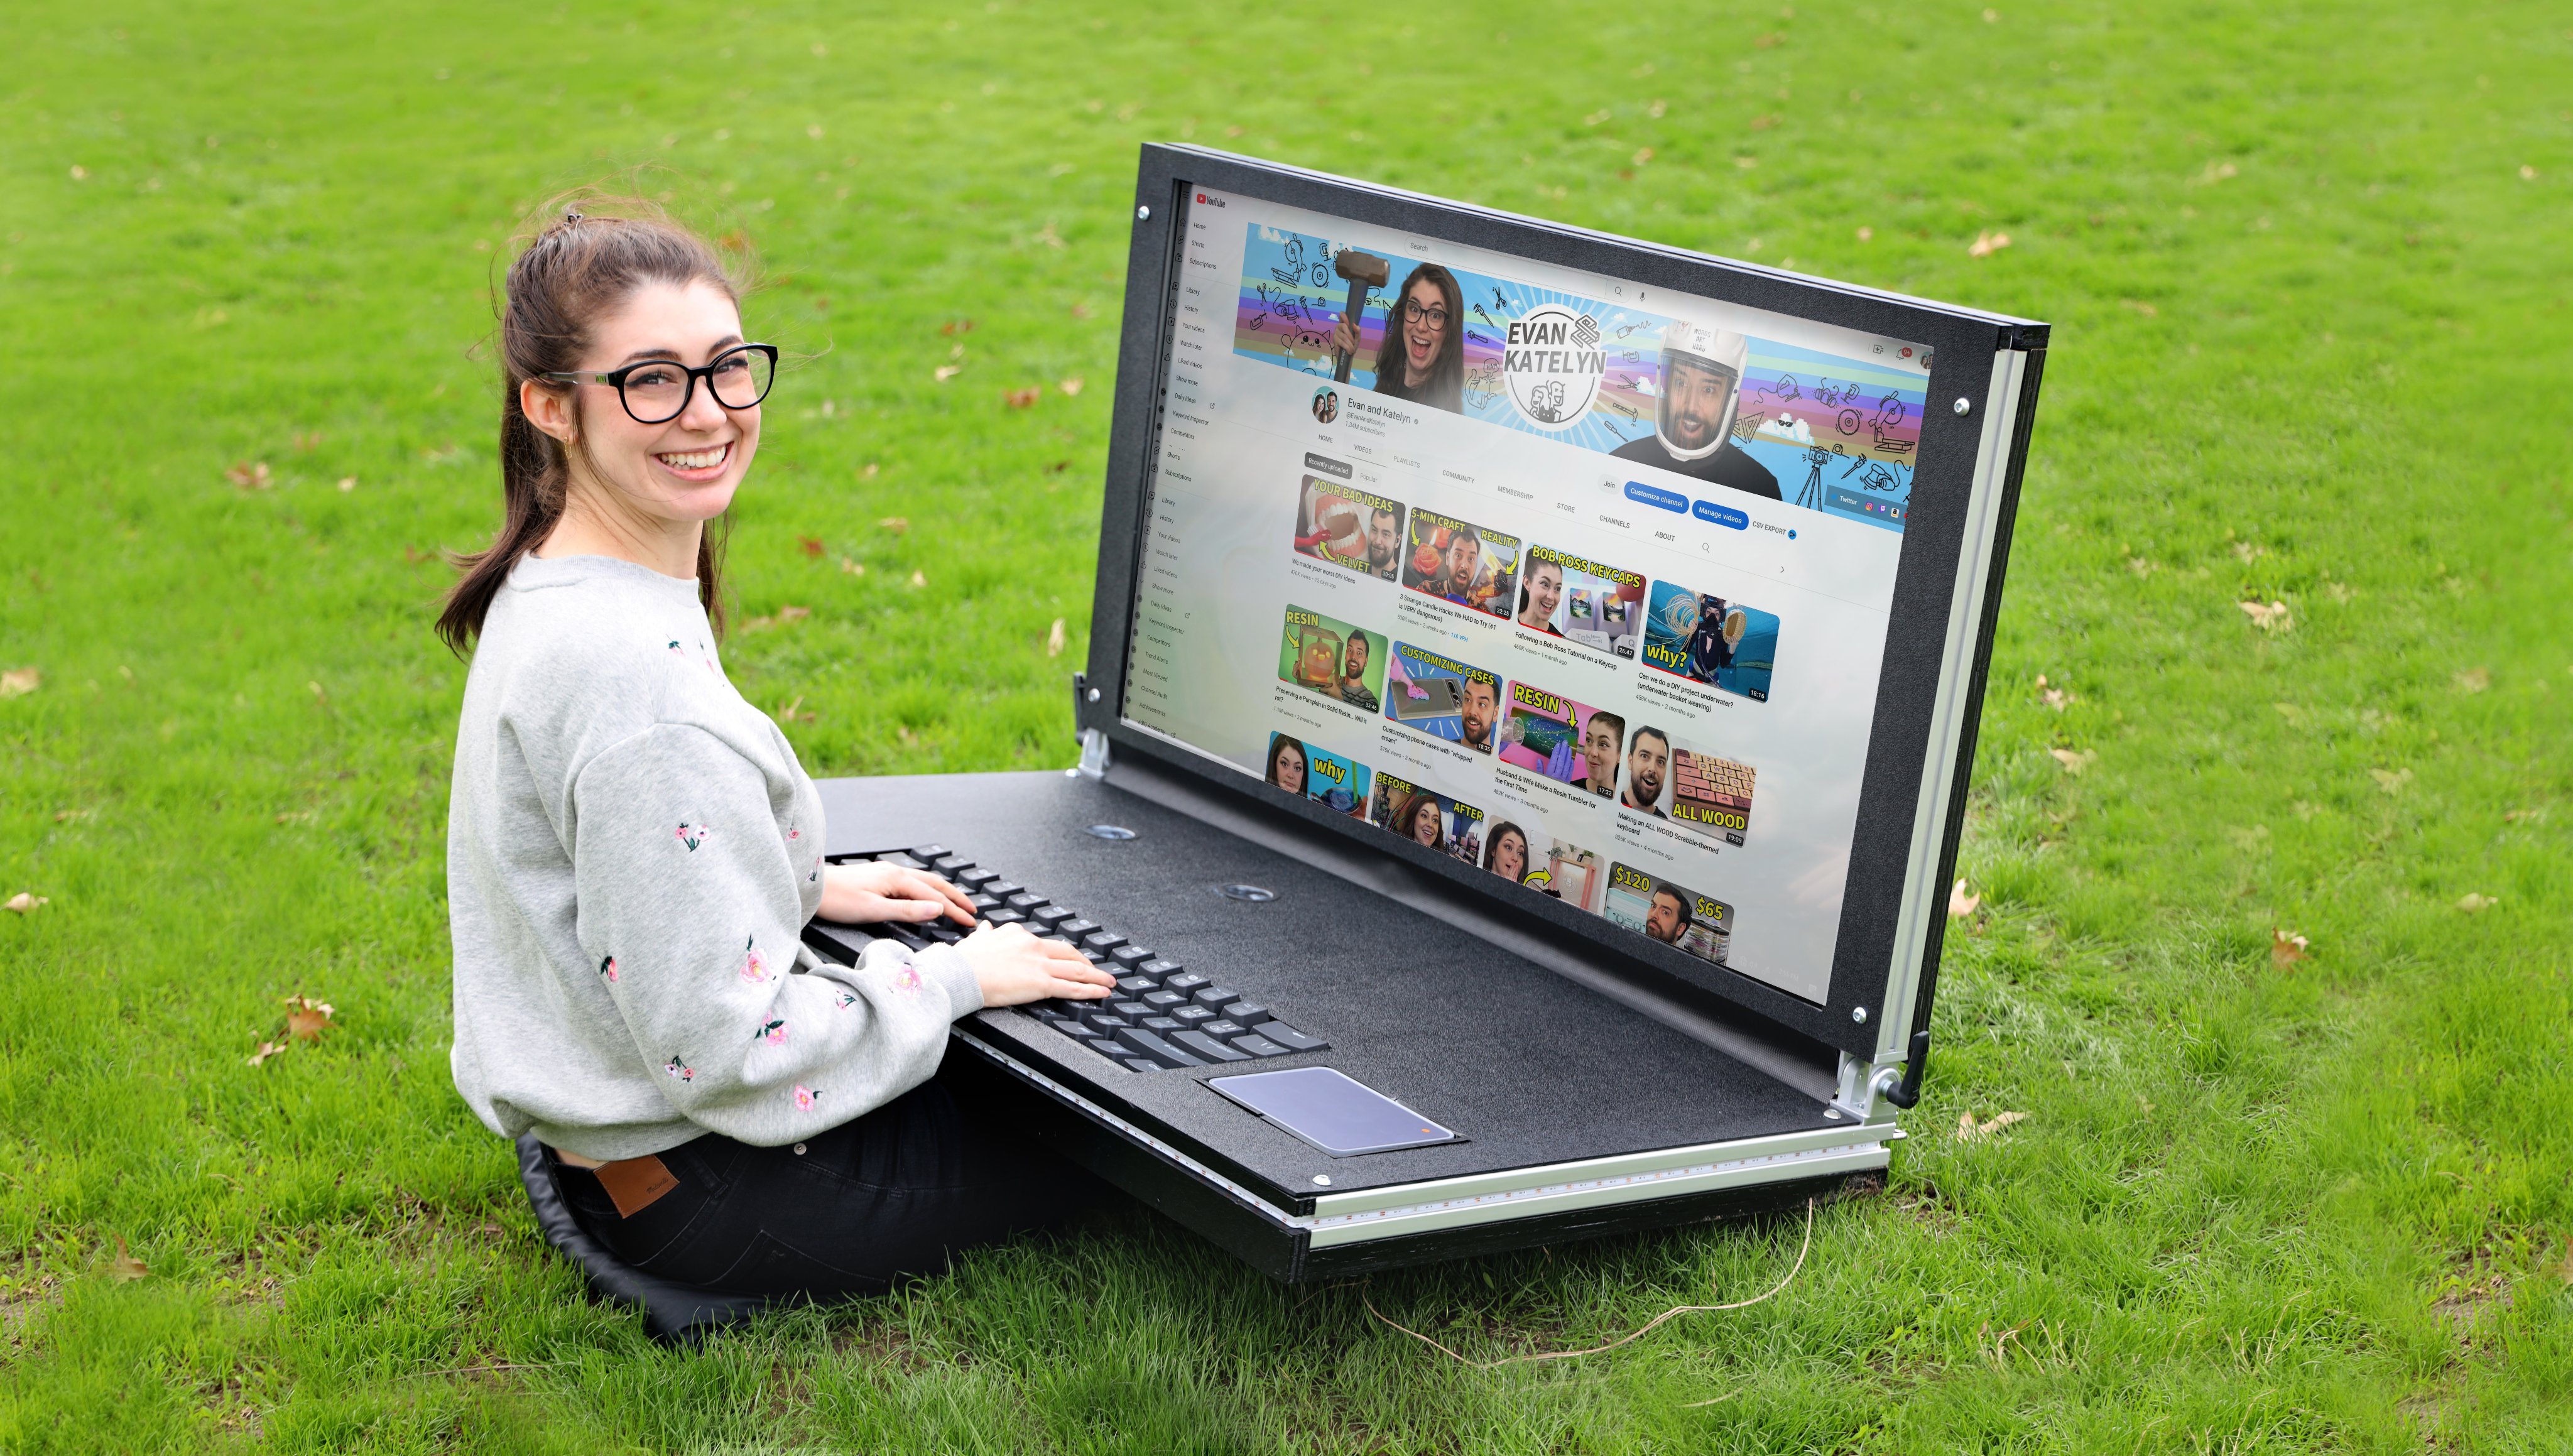 Unos blogueros fabricaron un enorme portátil de 43 pulgadas: TV como pantalla, teclado de 2,5 kg y un peso total de más de 45 kg (vídeo)